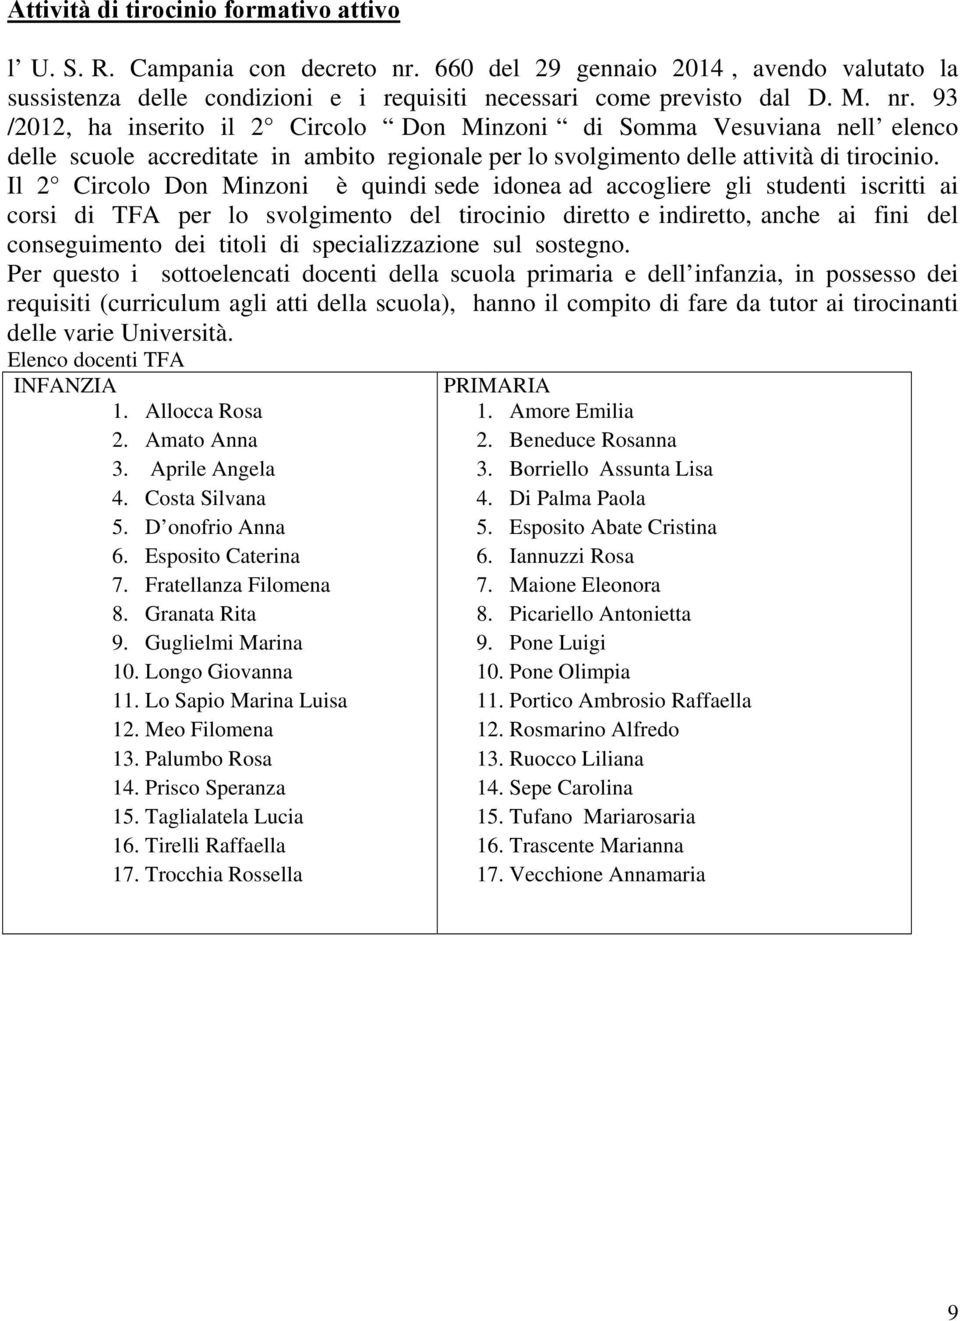 93 /2012, ha inserito il 2 Circolo Don Minzoni di Somma Vesuviana nell elenco delle scuole accreditate in ambito regionale per lo svolgimento delle attività di tirocinio.